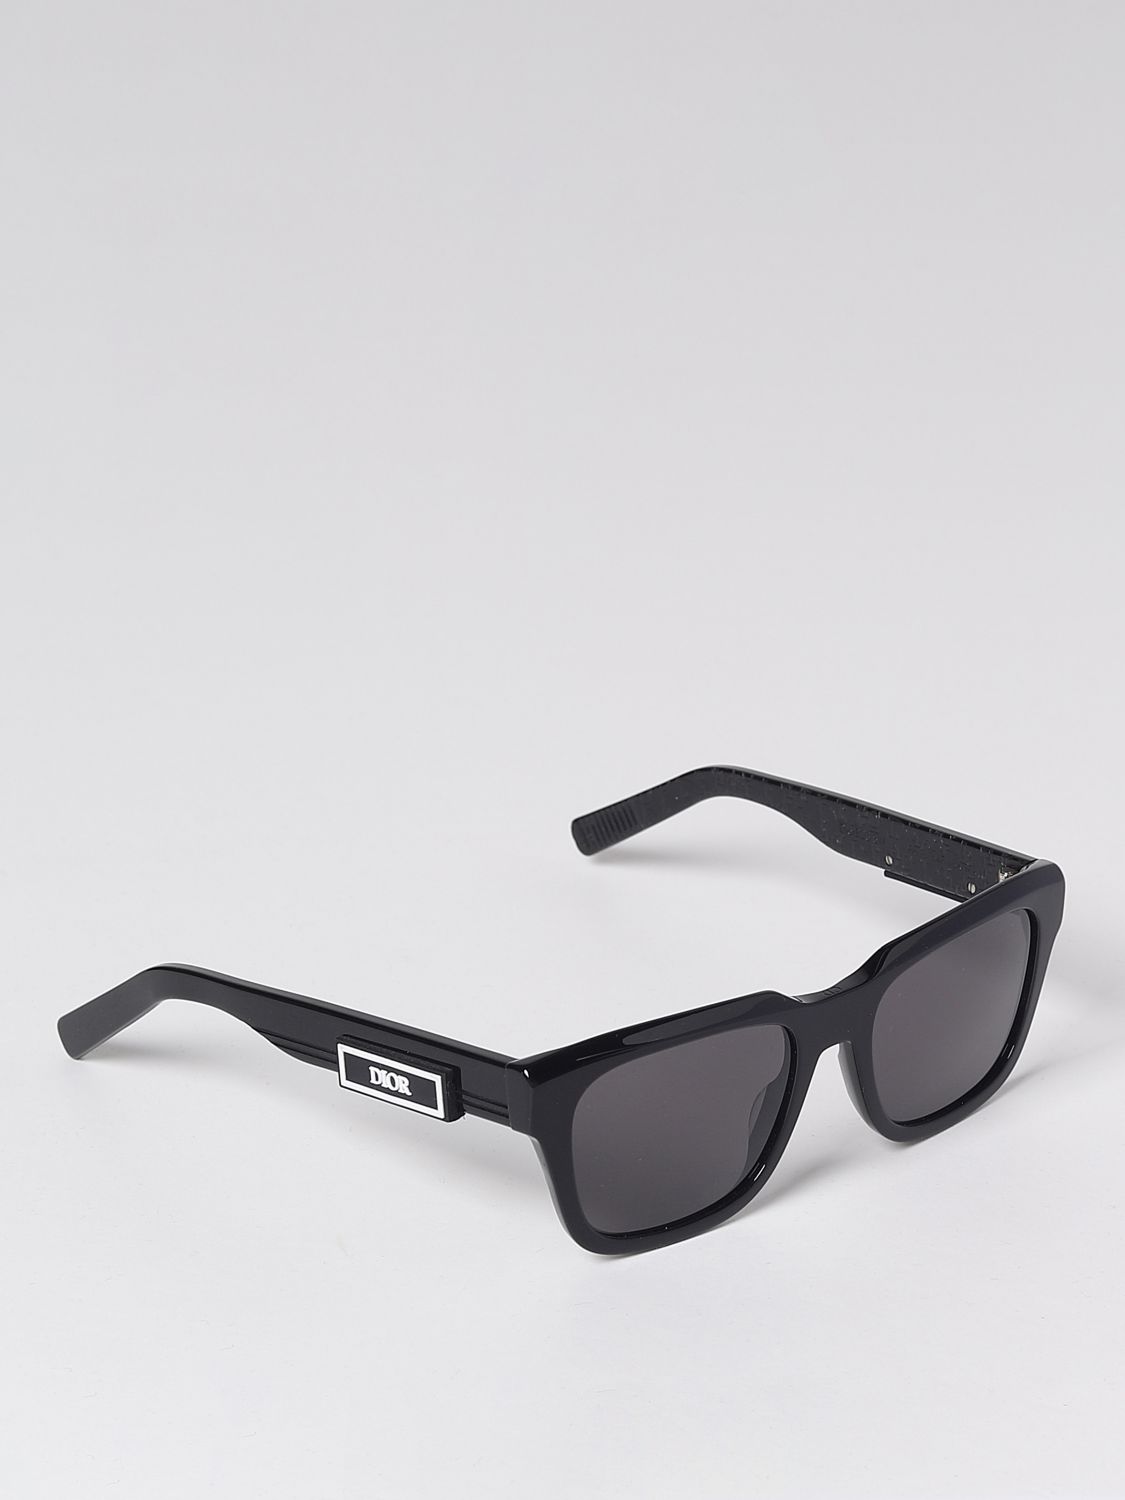 Sunglasses Dior Homme Black in Plastic  31625495